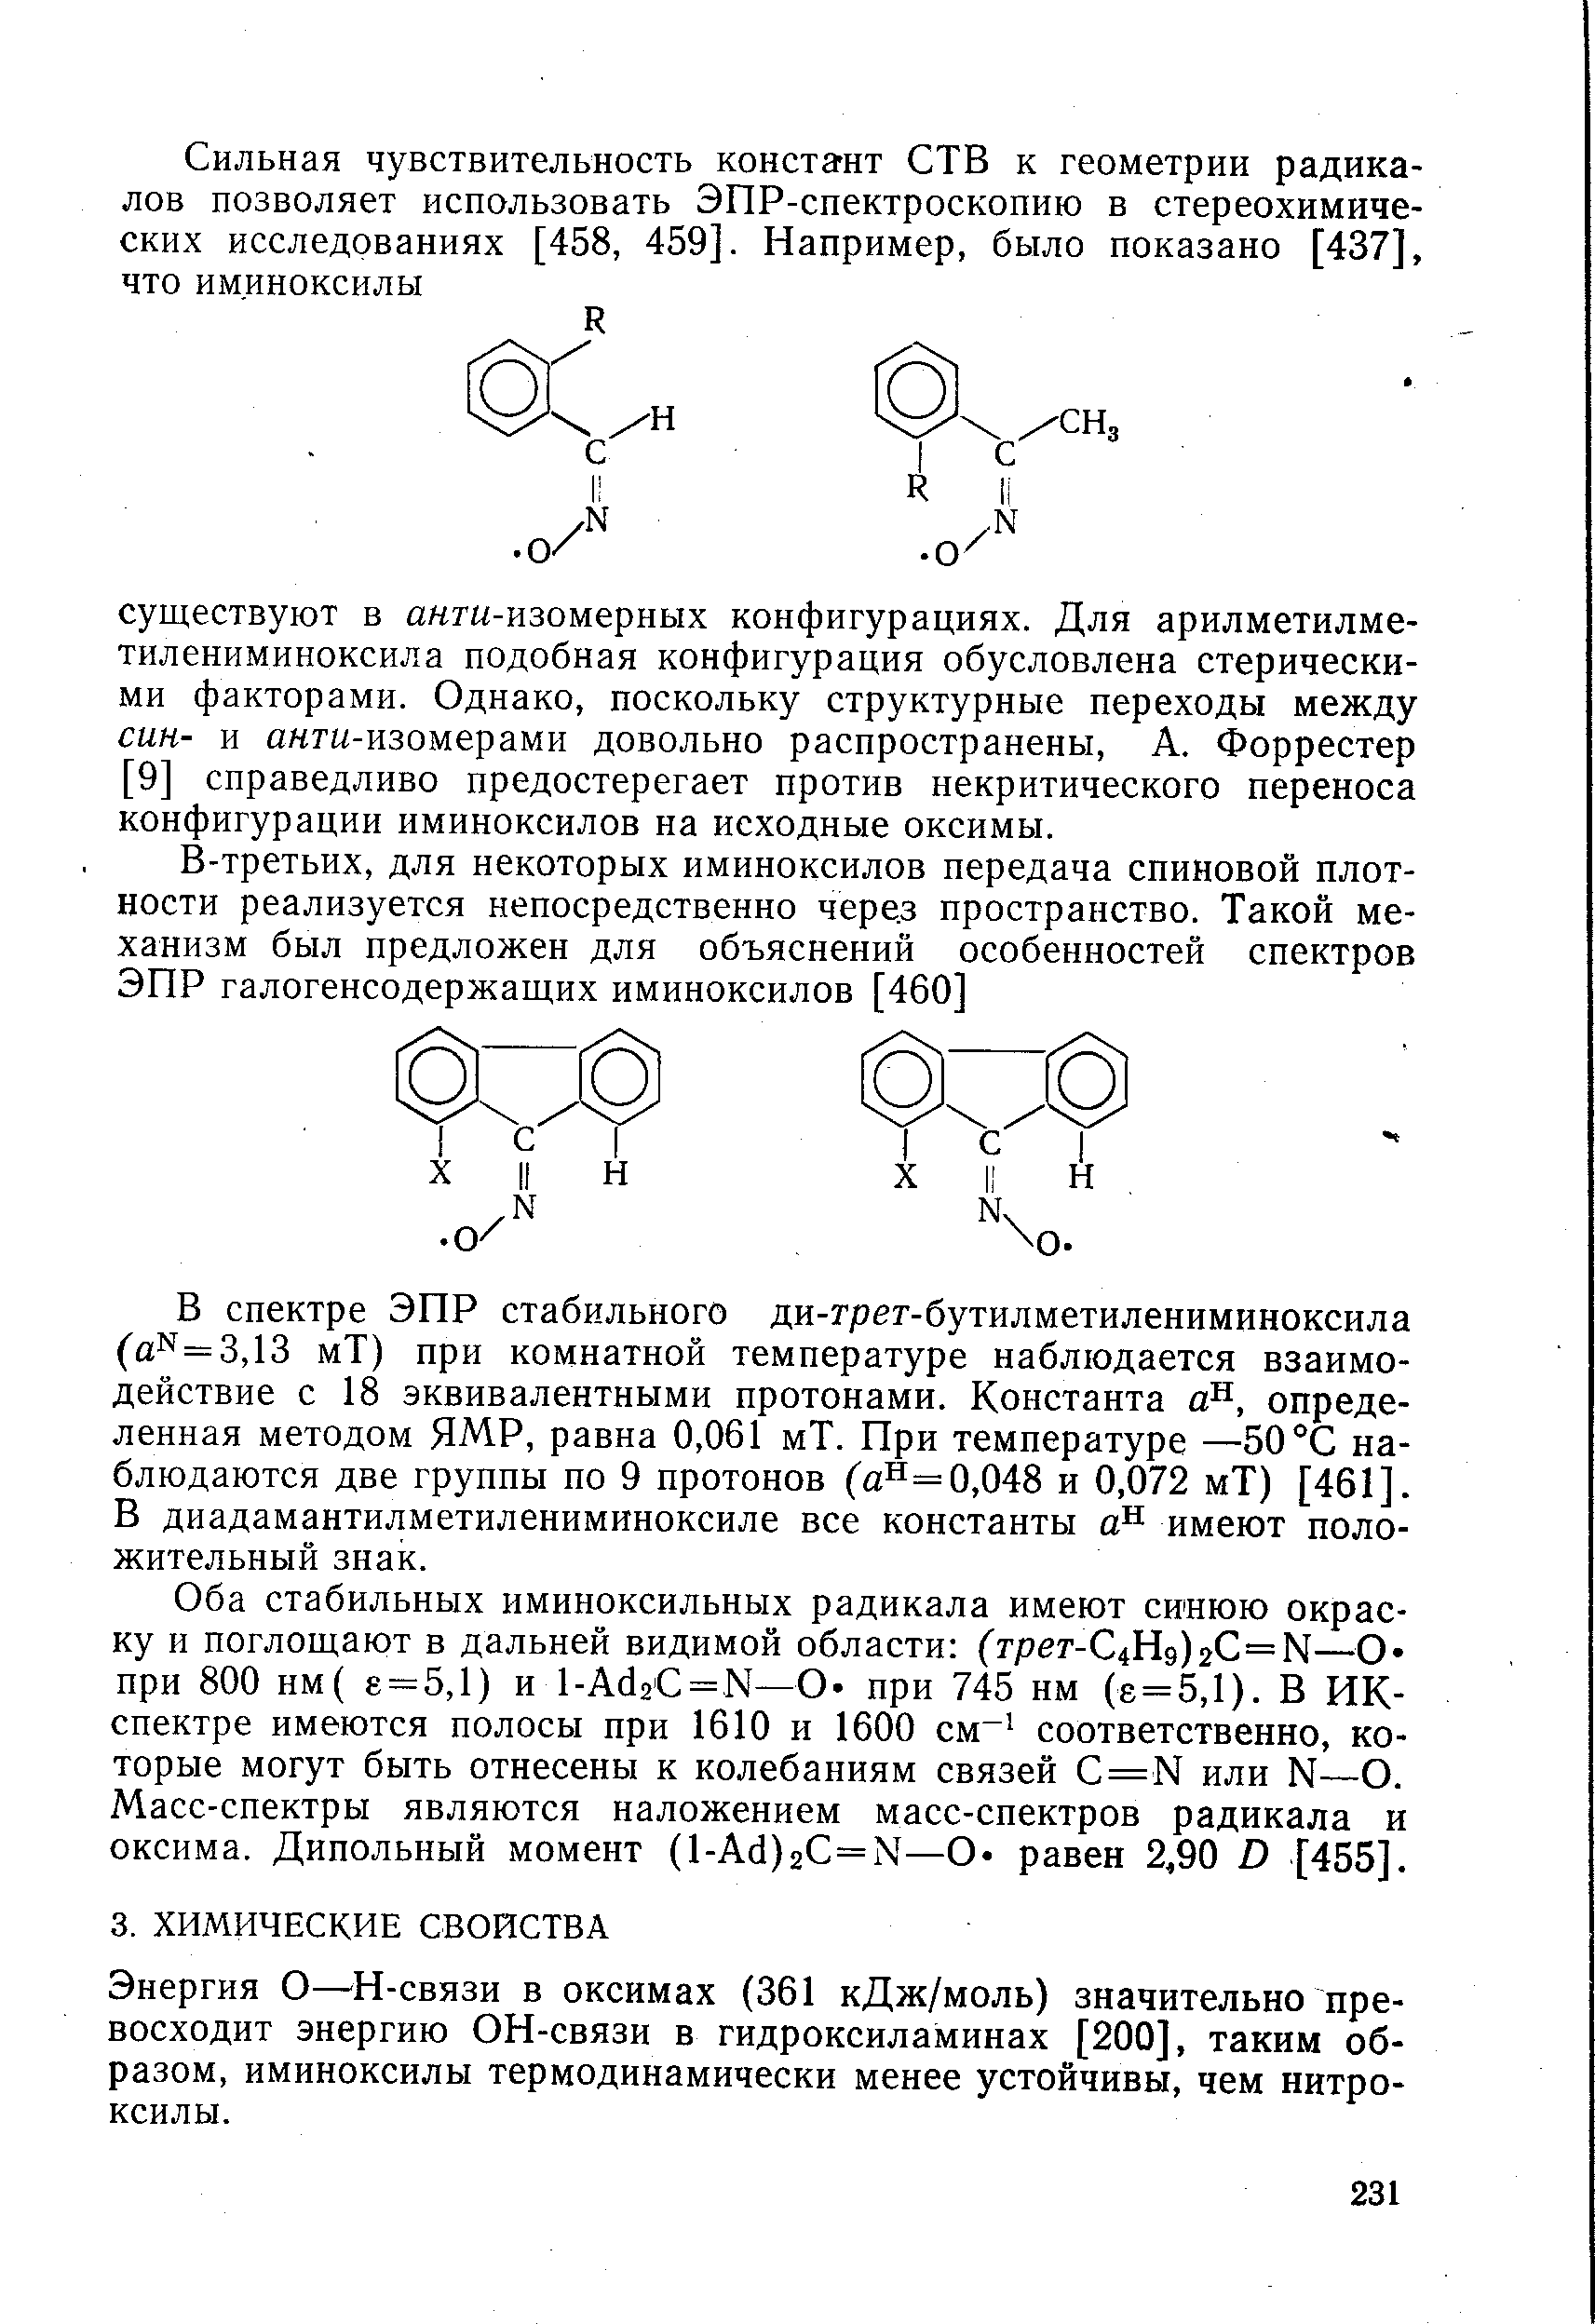 Энергия О— Н-связи в оксимах (361 кДж/моль) значительно превосходит энергию ОН-связи в гидроксиламинах [200], таким образом, иминоксилы термодинамически менее устойчивы, чем нитроксилы.